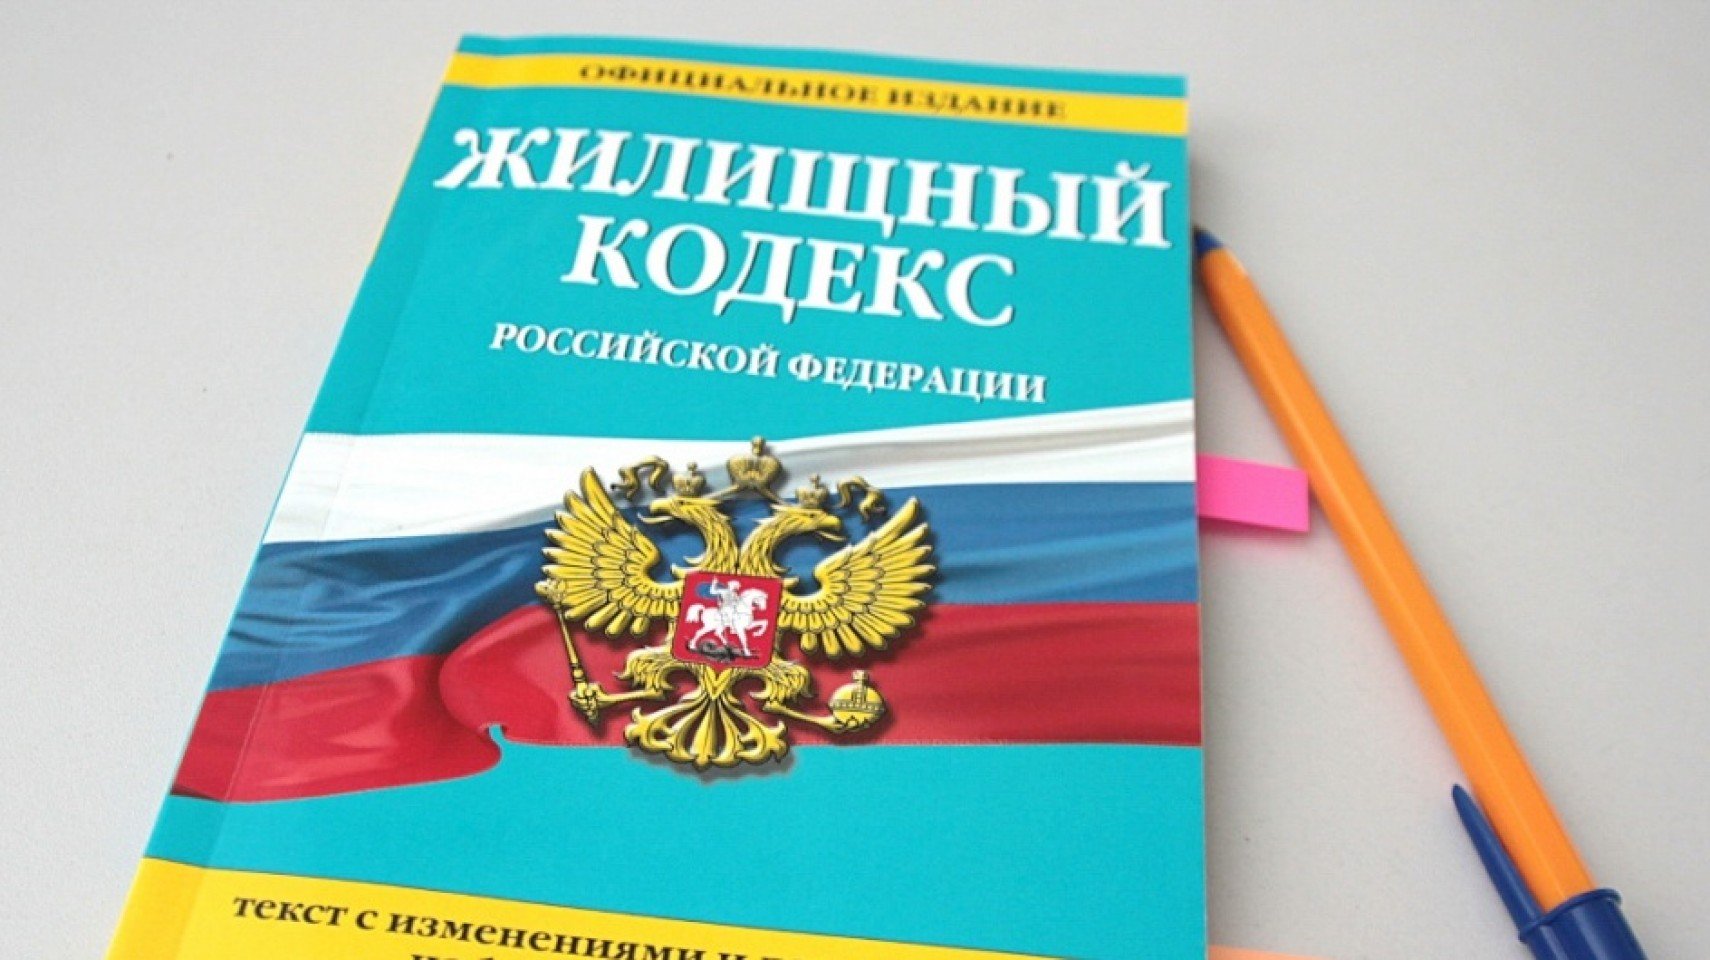 Кодекс российской федерации 2016 года